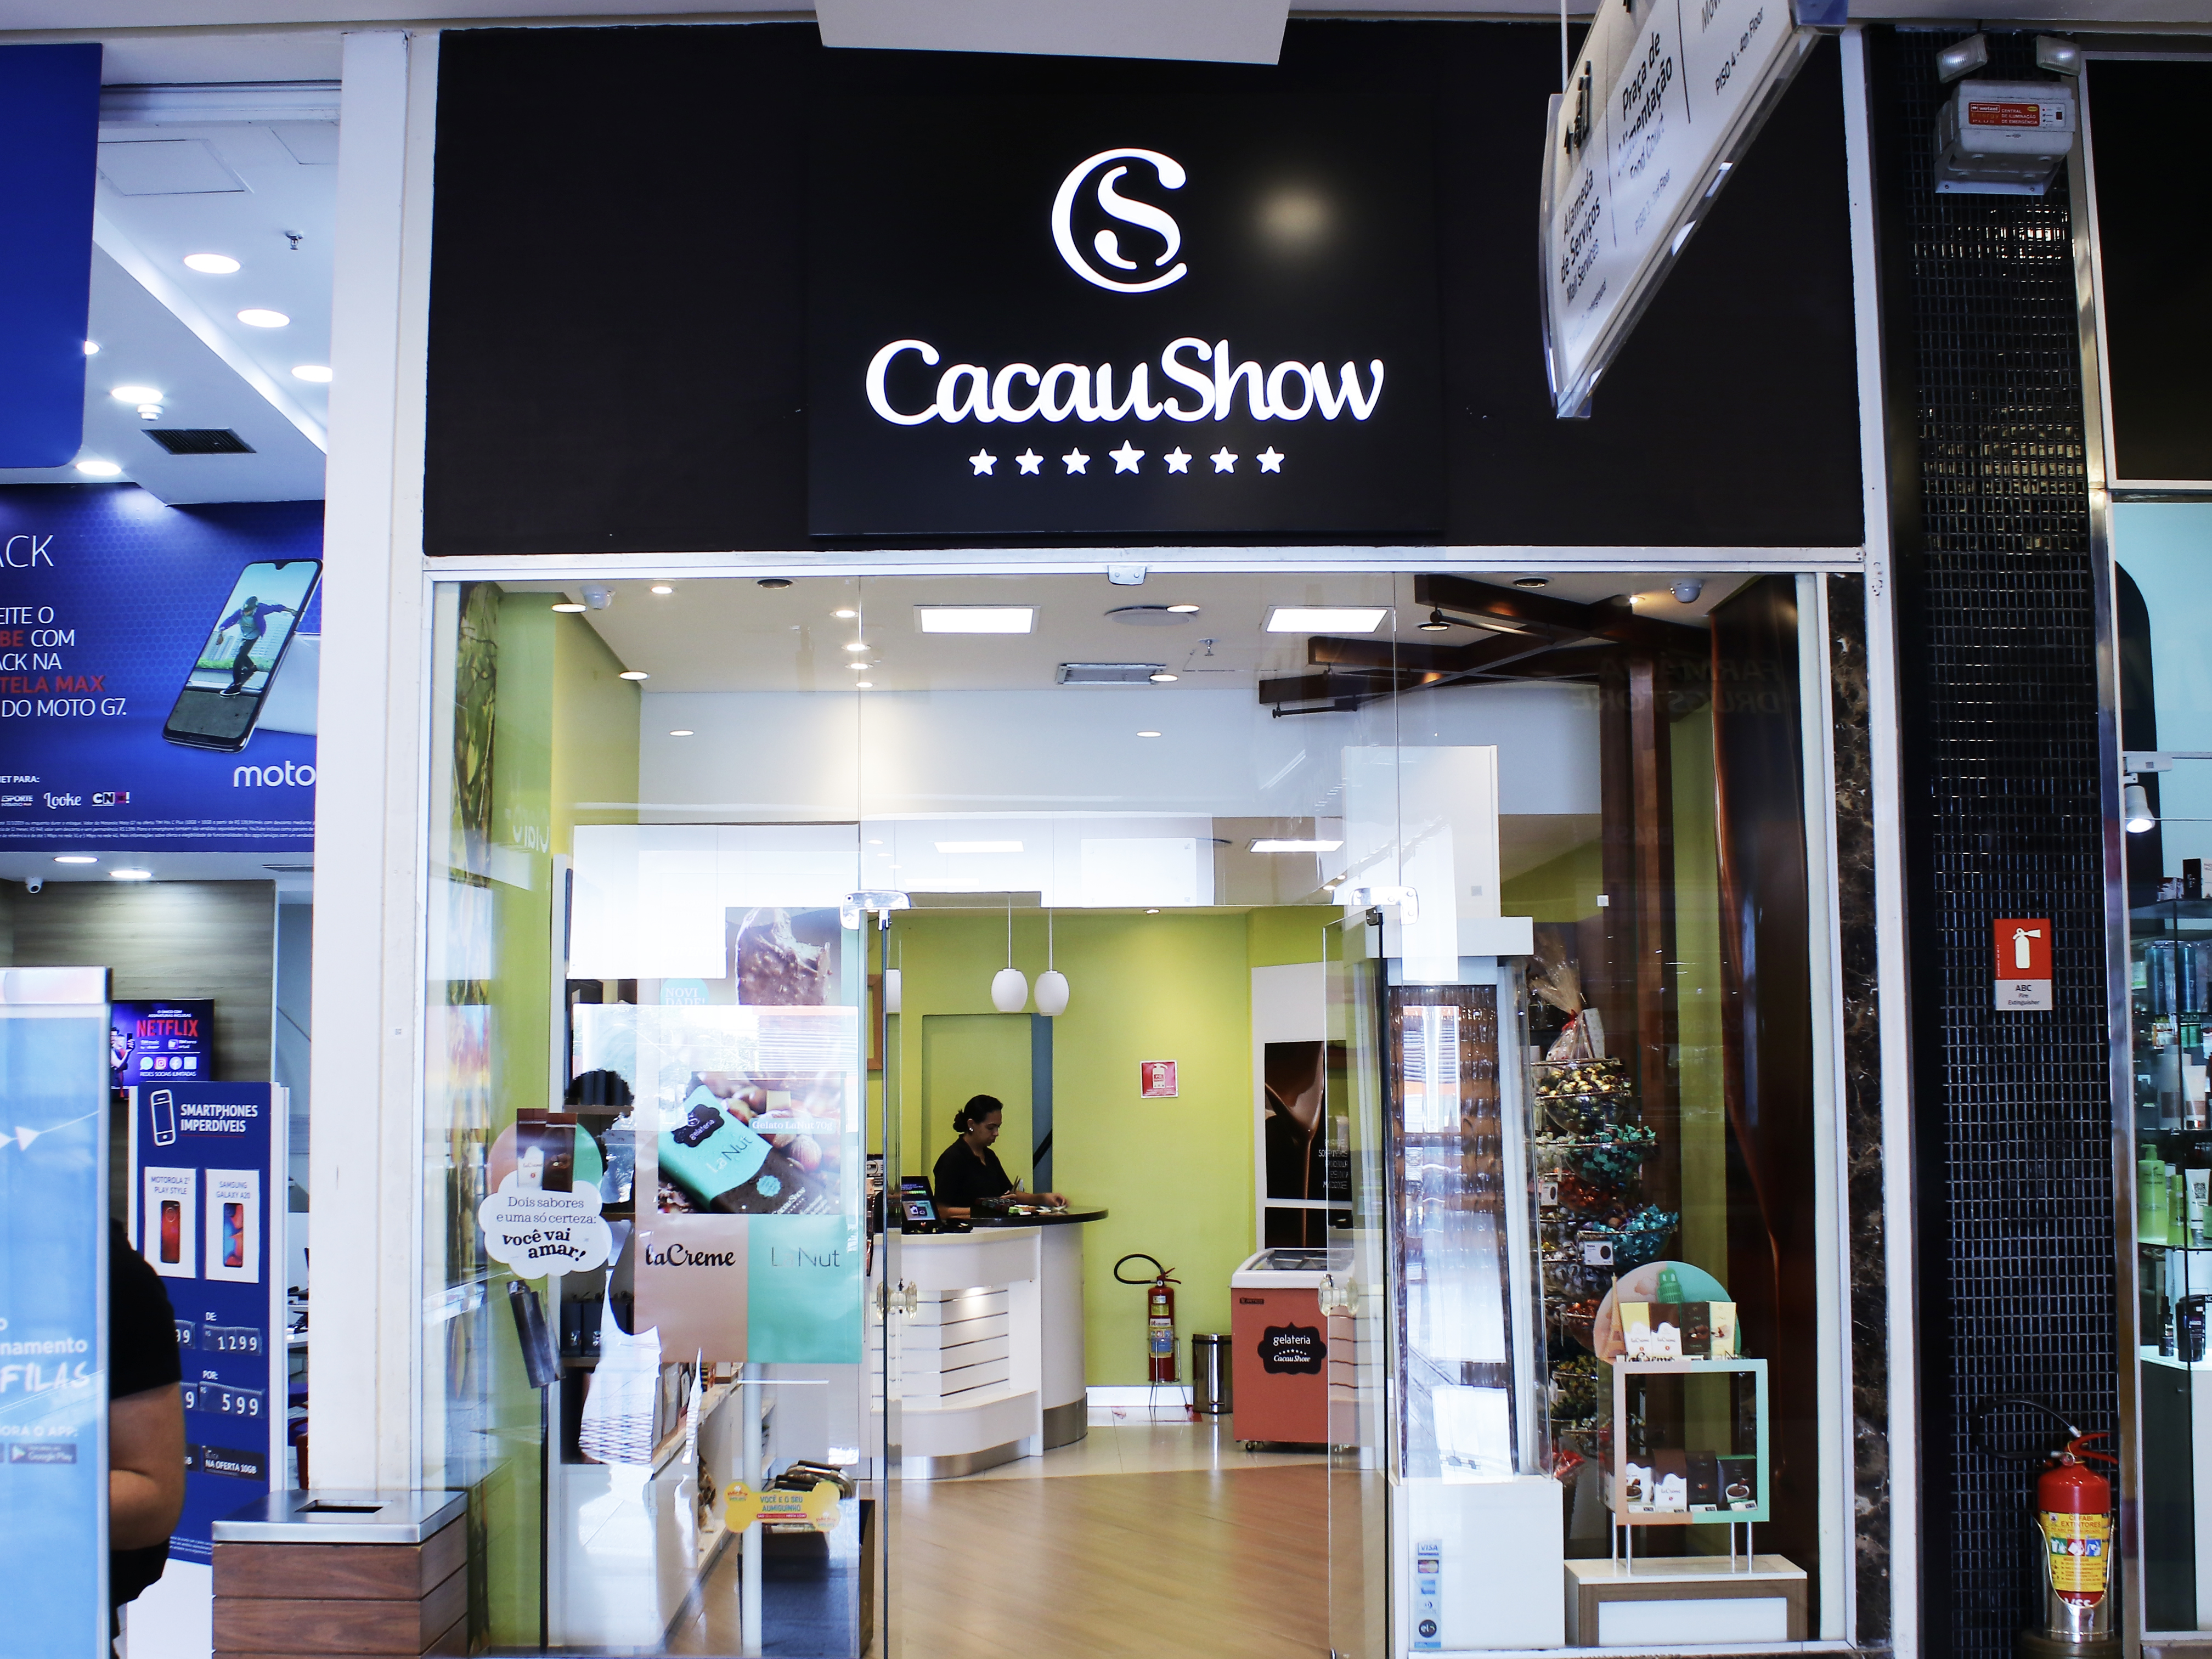 Cacau Show - Osasco Plaza - o nosso shopping